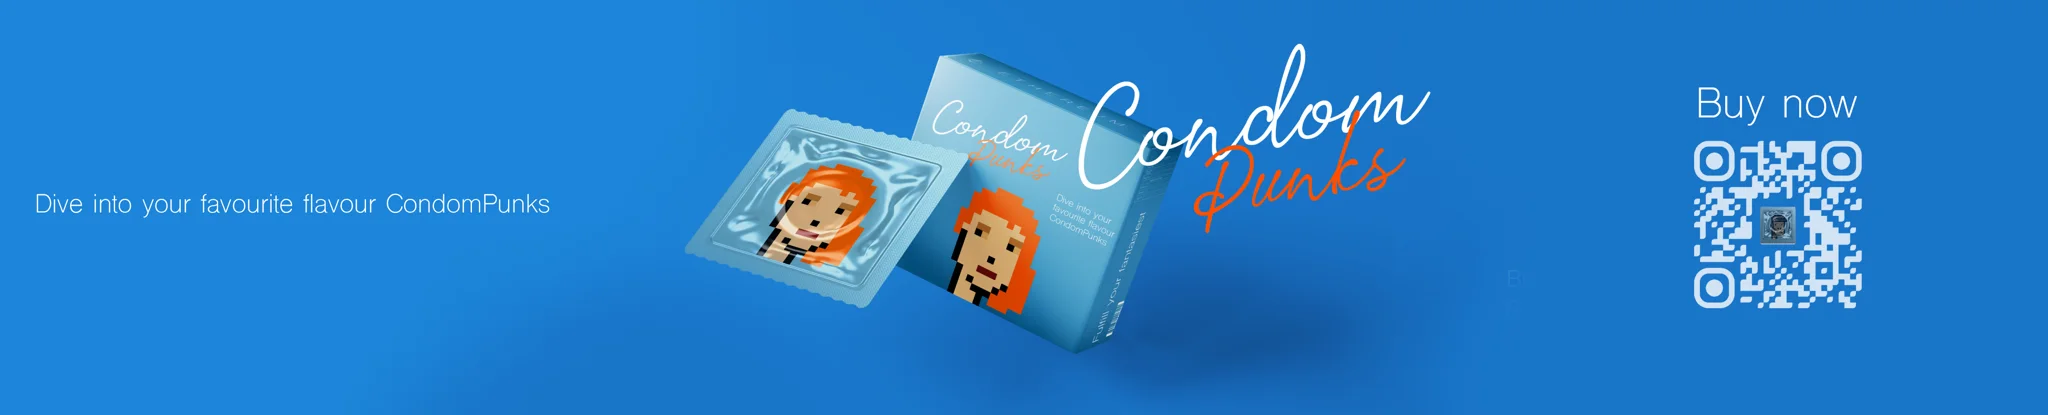 banner for CondomPunks